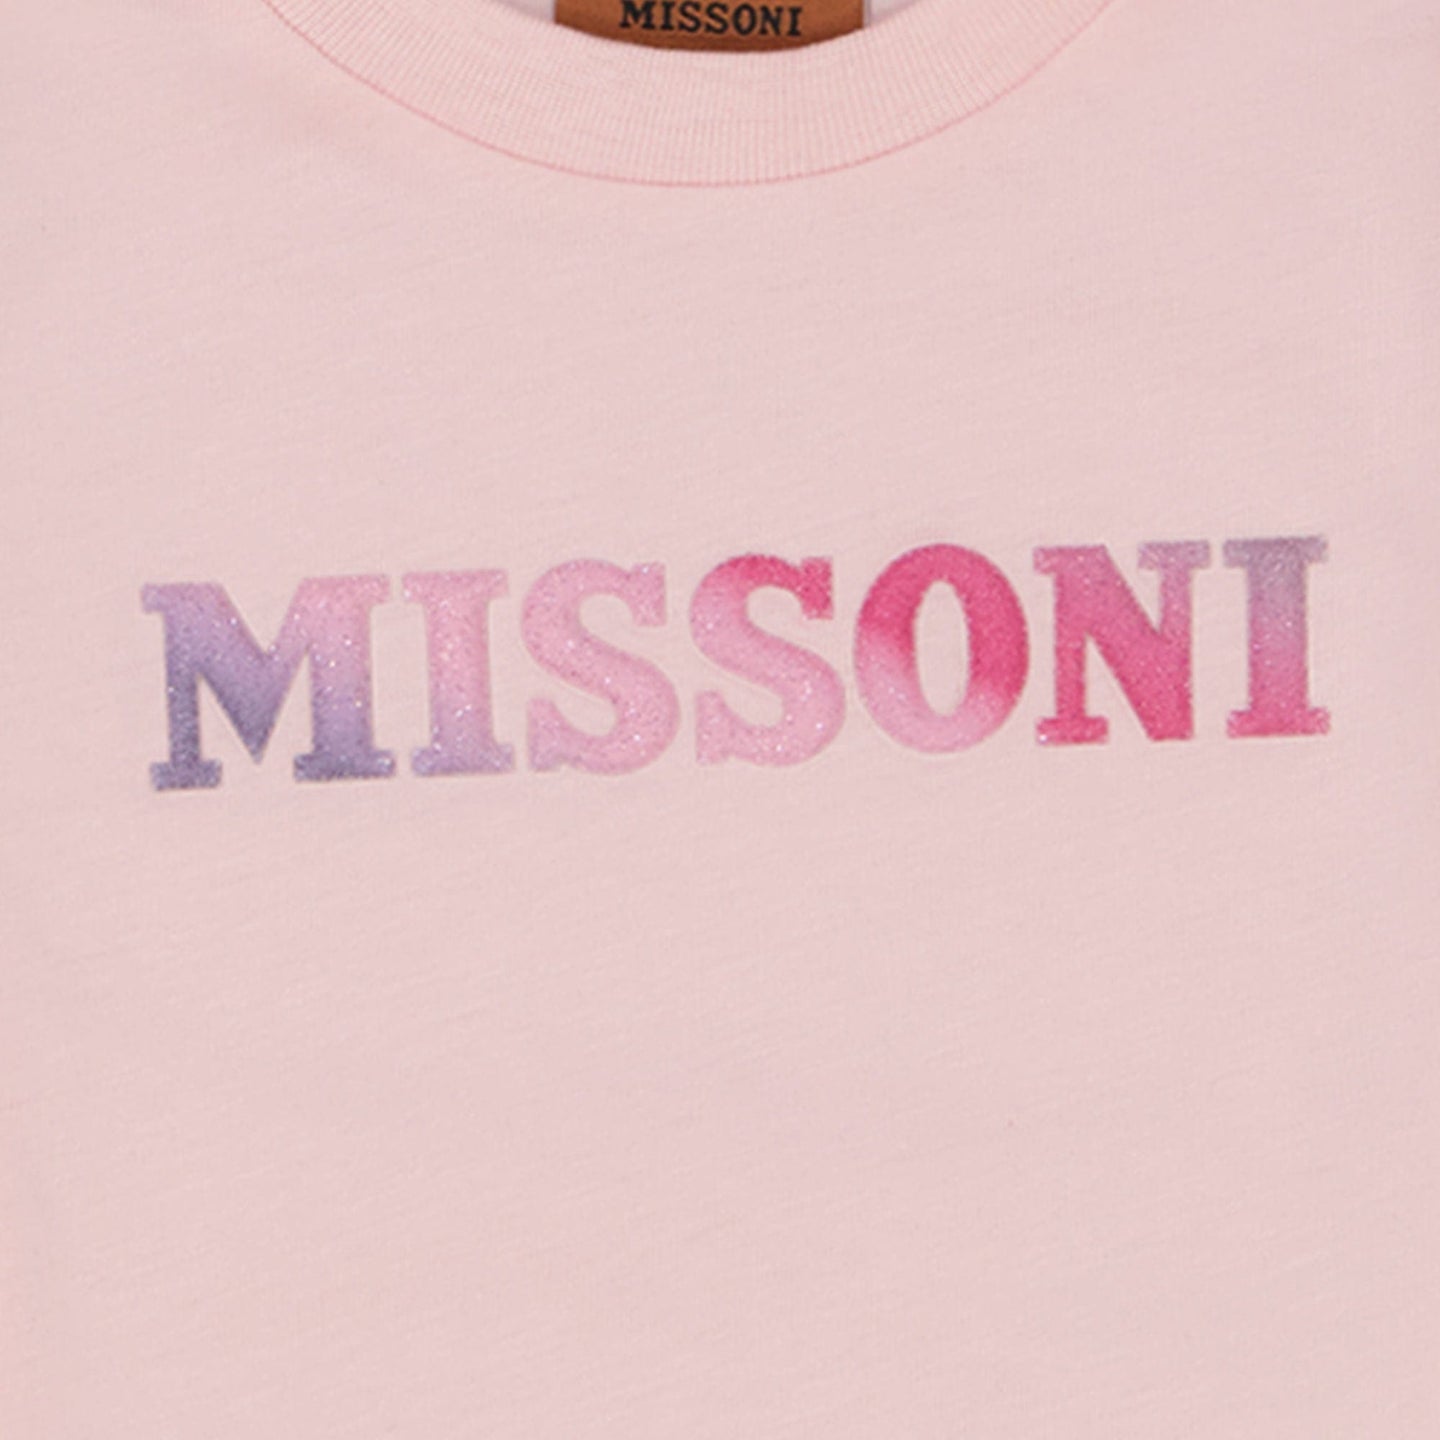 Missoni Baby Meisjes T-shirt Licht Roze 3 mnd